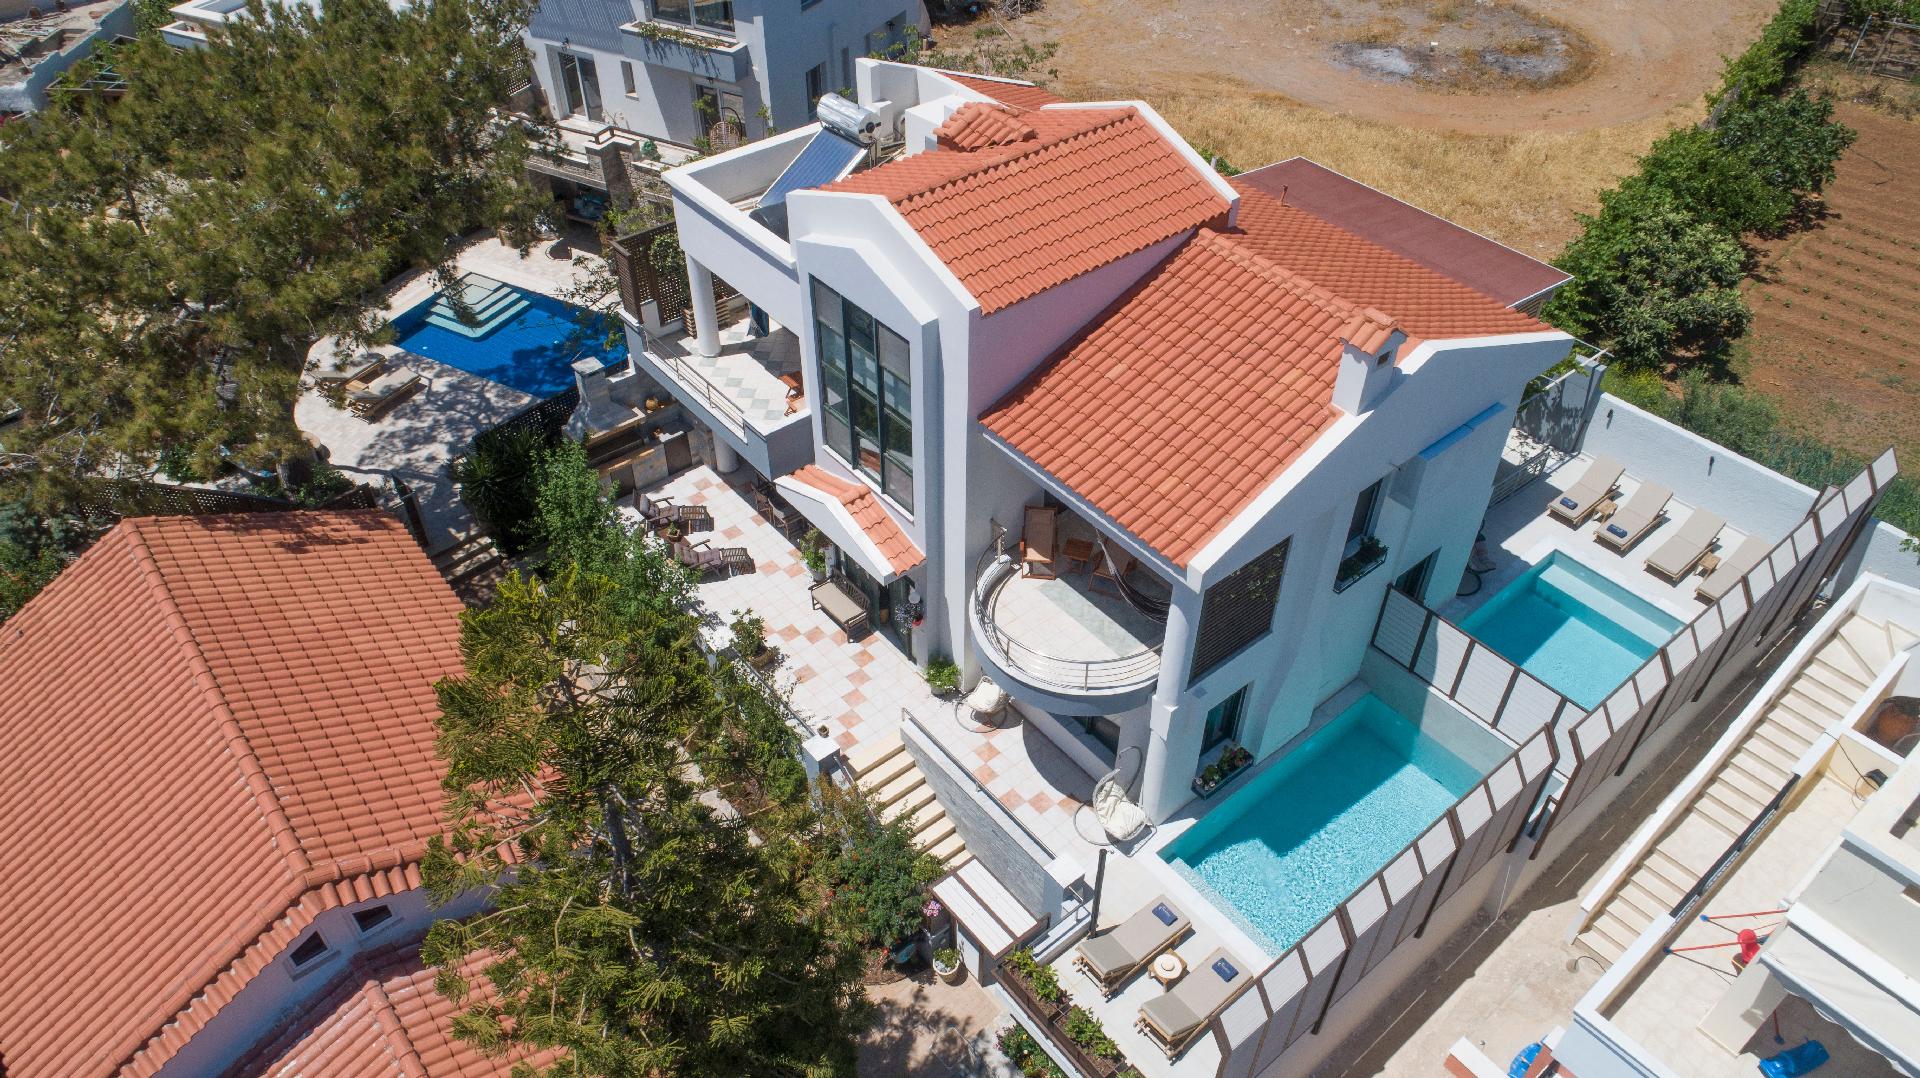 Ferienhaus mit Privatpool für 24 Personen  +  Ferienhaus in Griechenland